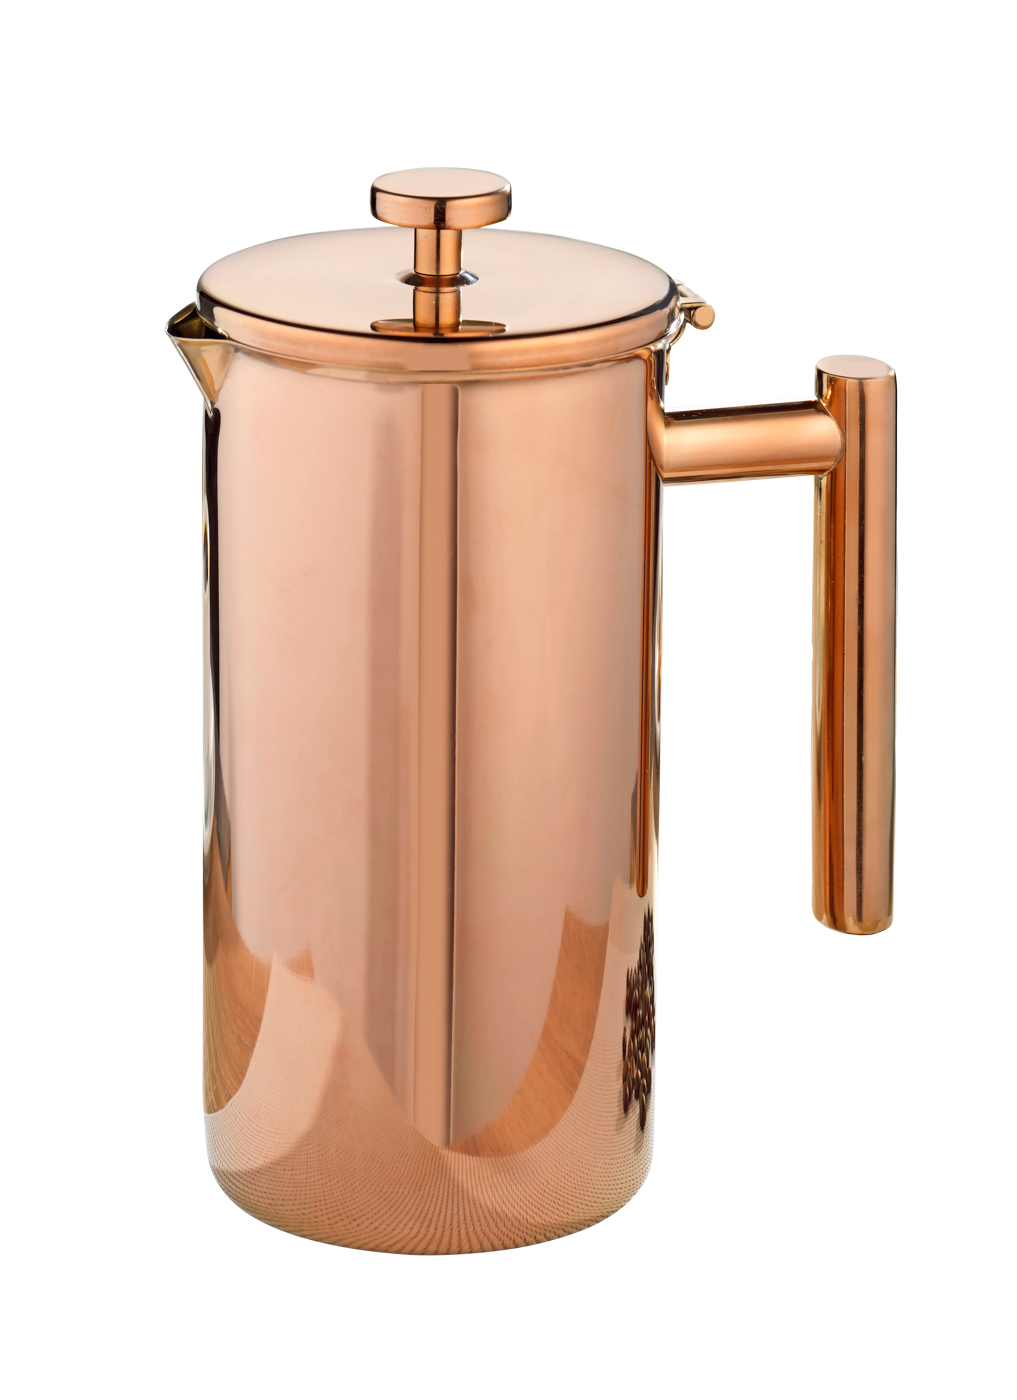 Kaffeekanne STRATFORD, Edelstahl, 1 Liter, mit kupferfarbener PVD-Beschichtung